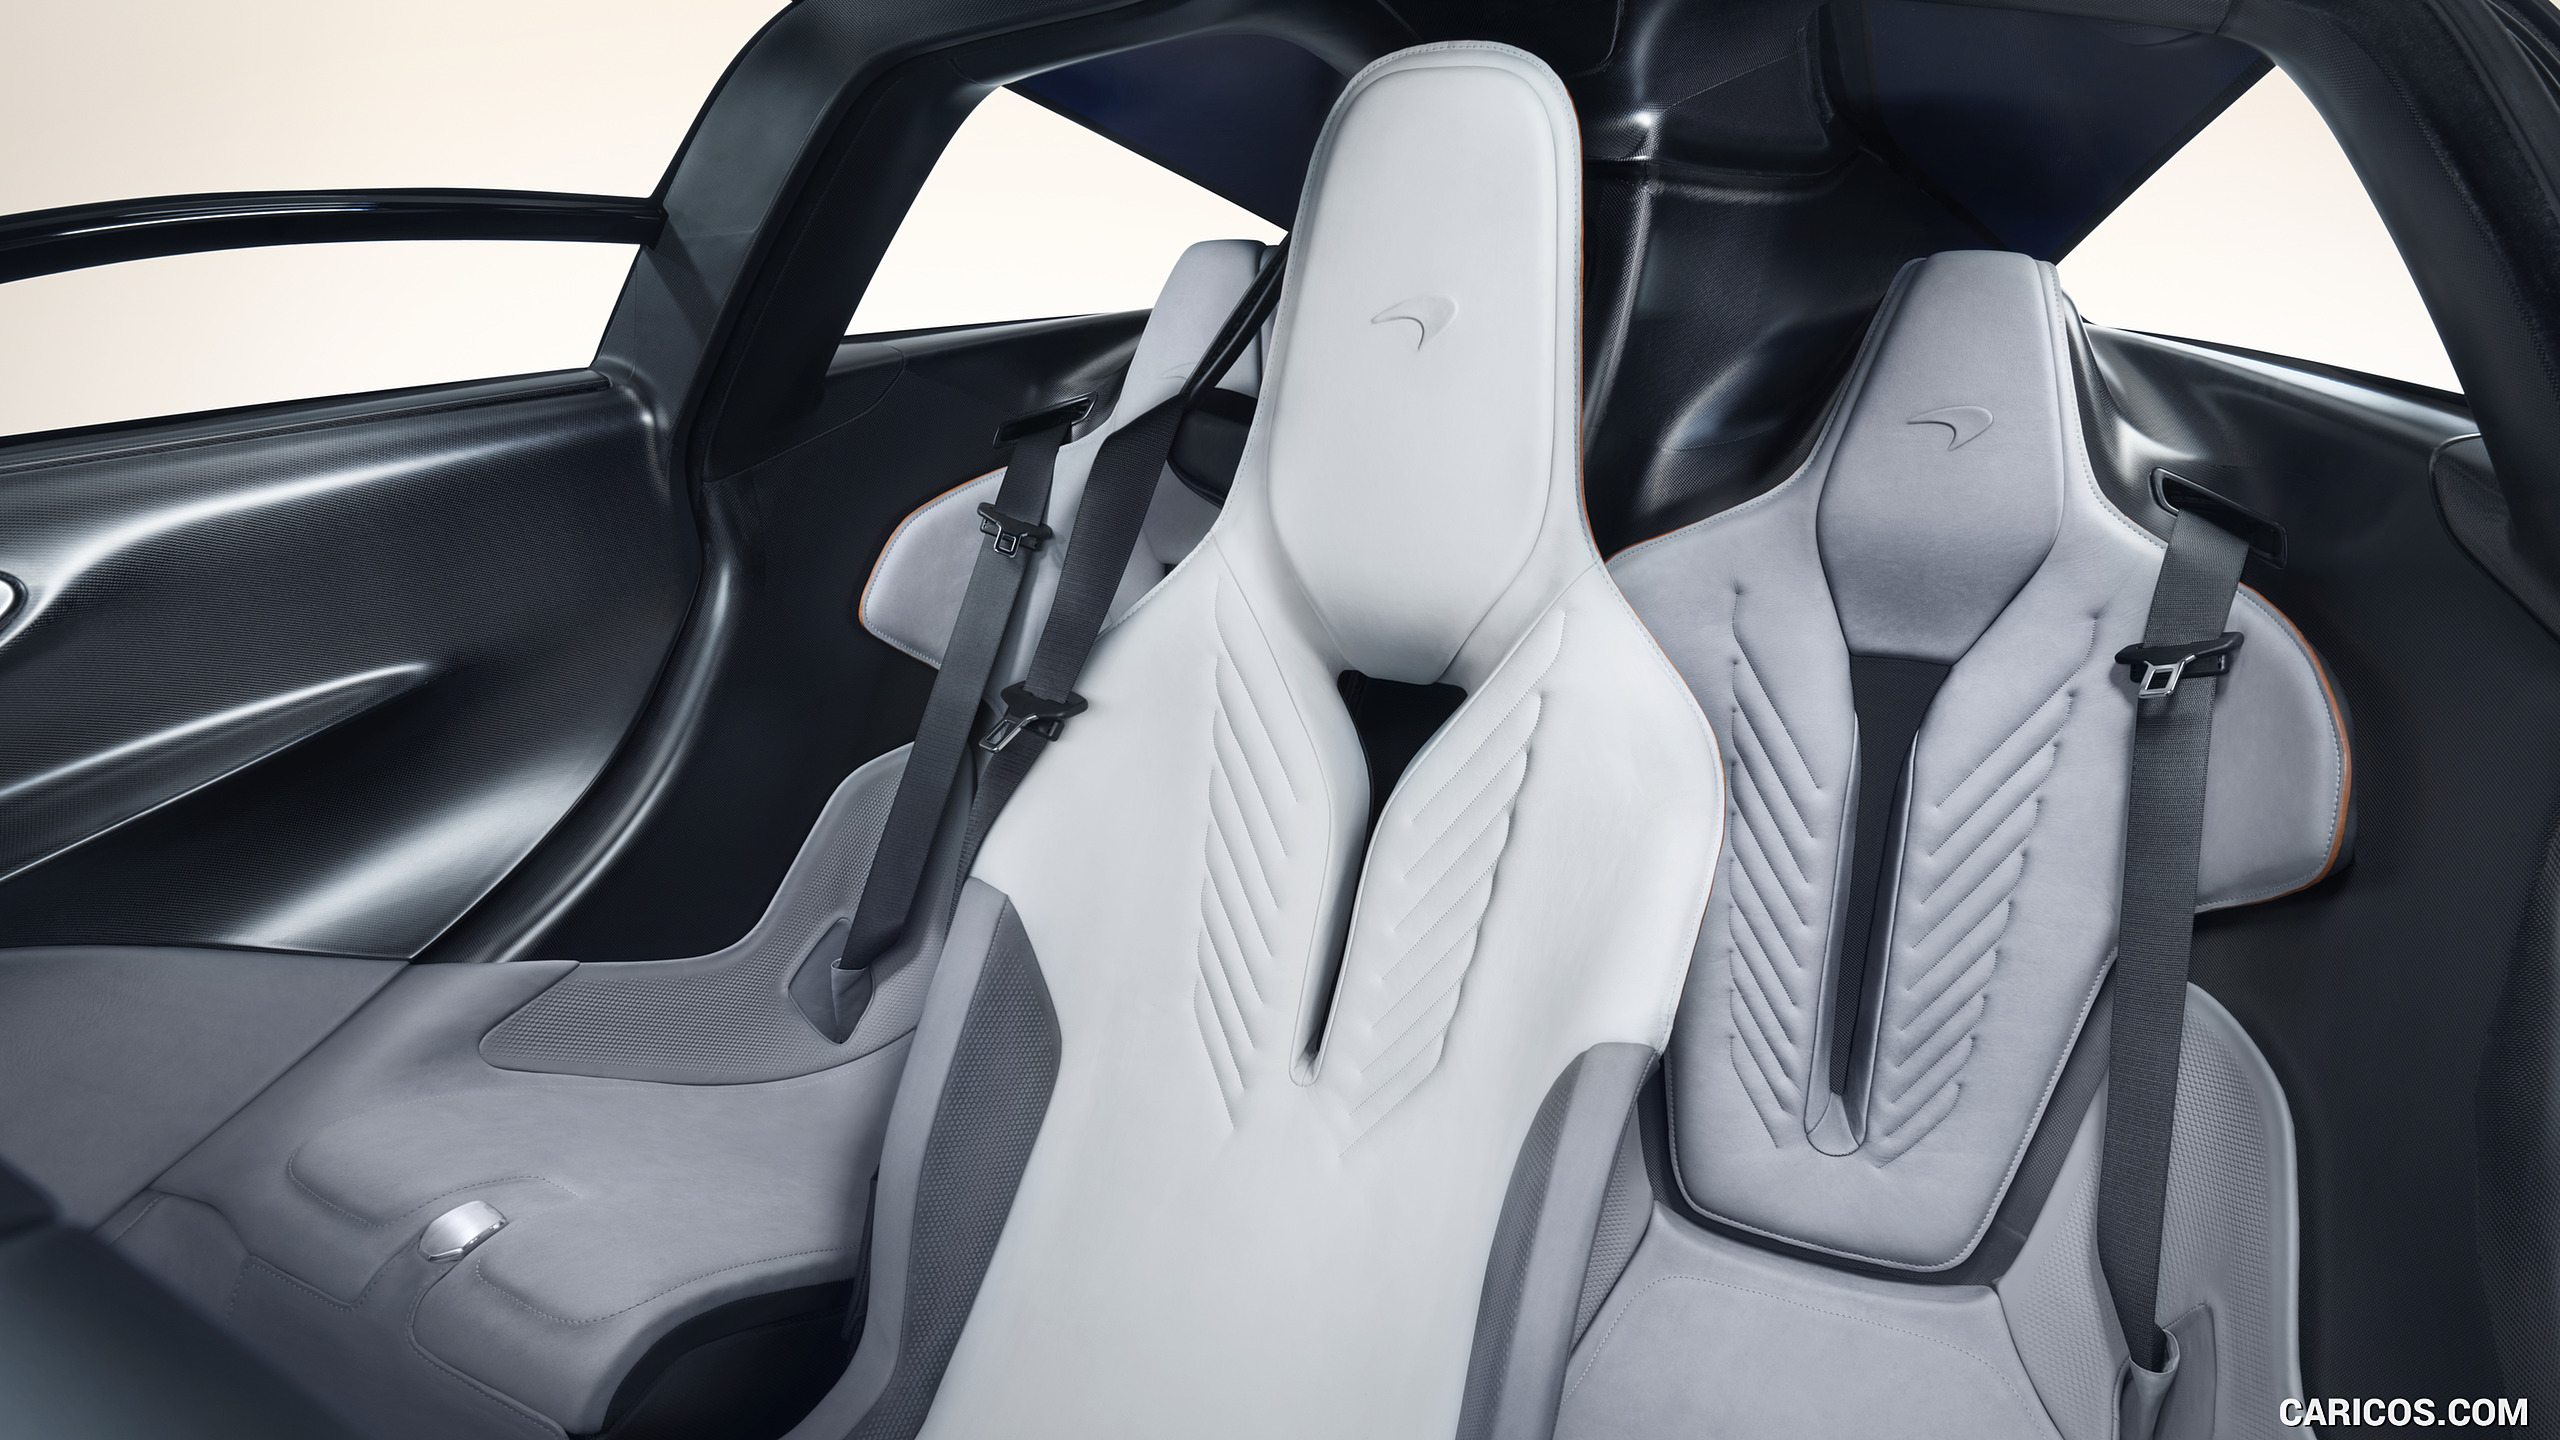 2019 McLaren Speedtail - Interior, Seats, #21 of 39